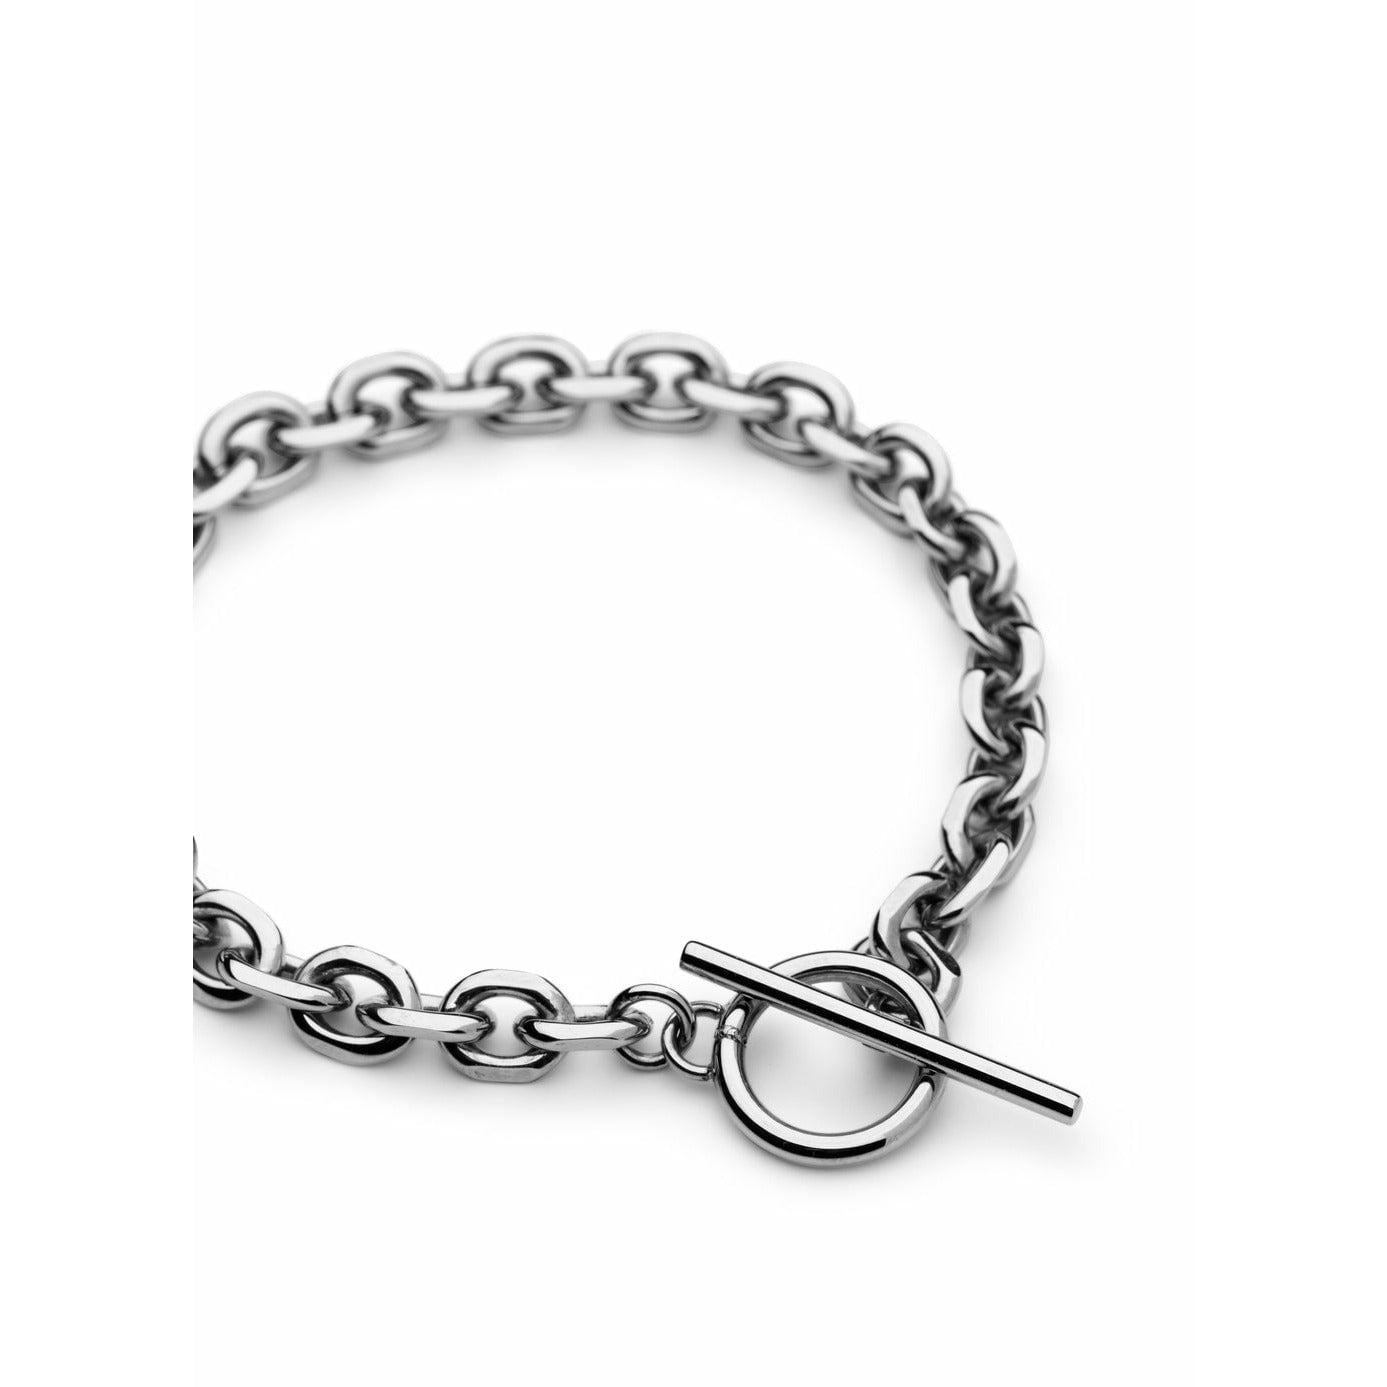 Skultuna Unité Chain Bracelet Small Polished Steel, ø14,5 Cm